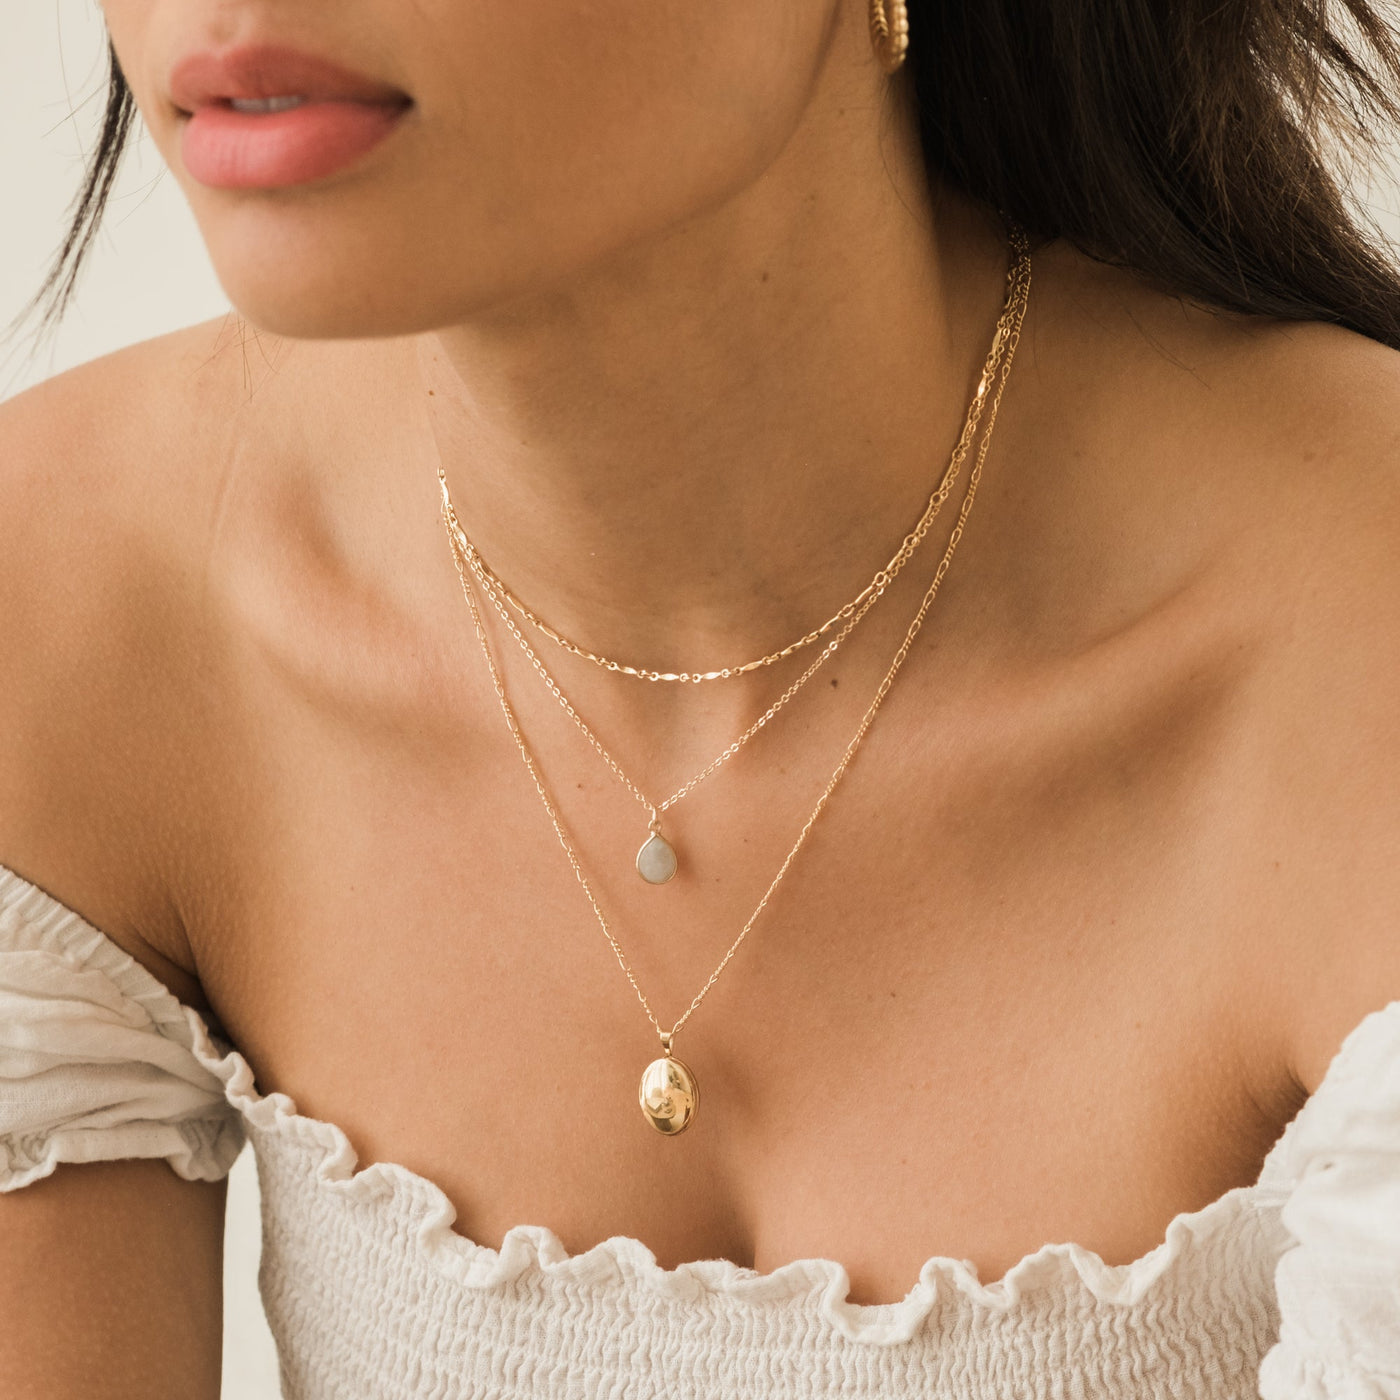 Moonstone Teardrop Necklace | Simple & Dainty Jewelry